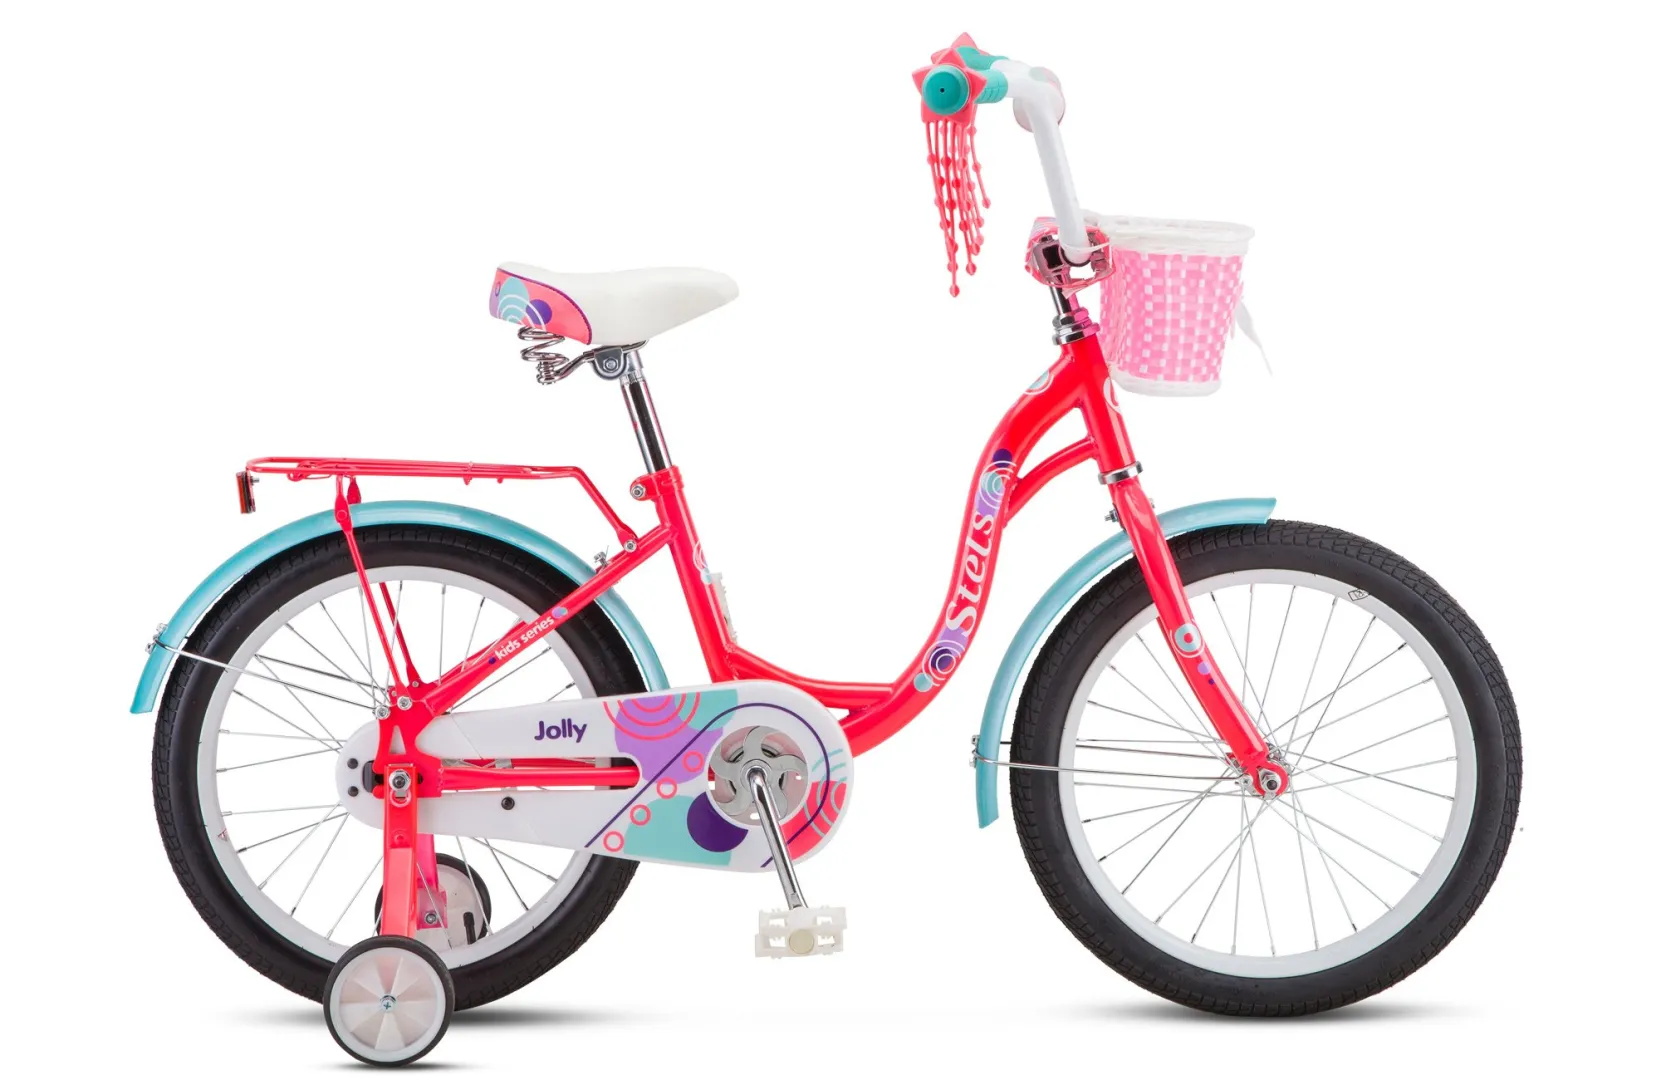 Велосипед Stels 18 Jolly V010 розовый/голубой